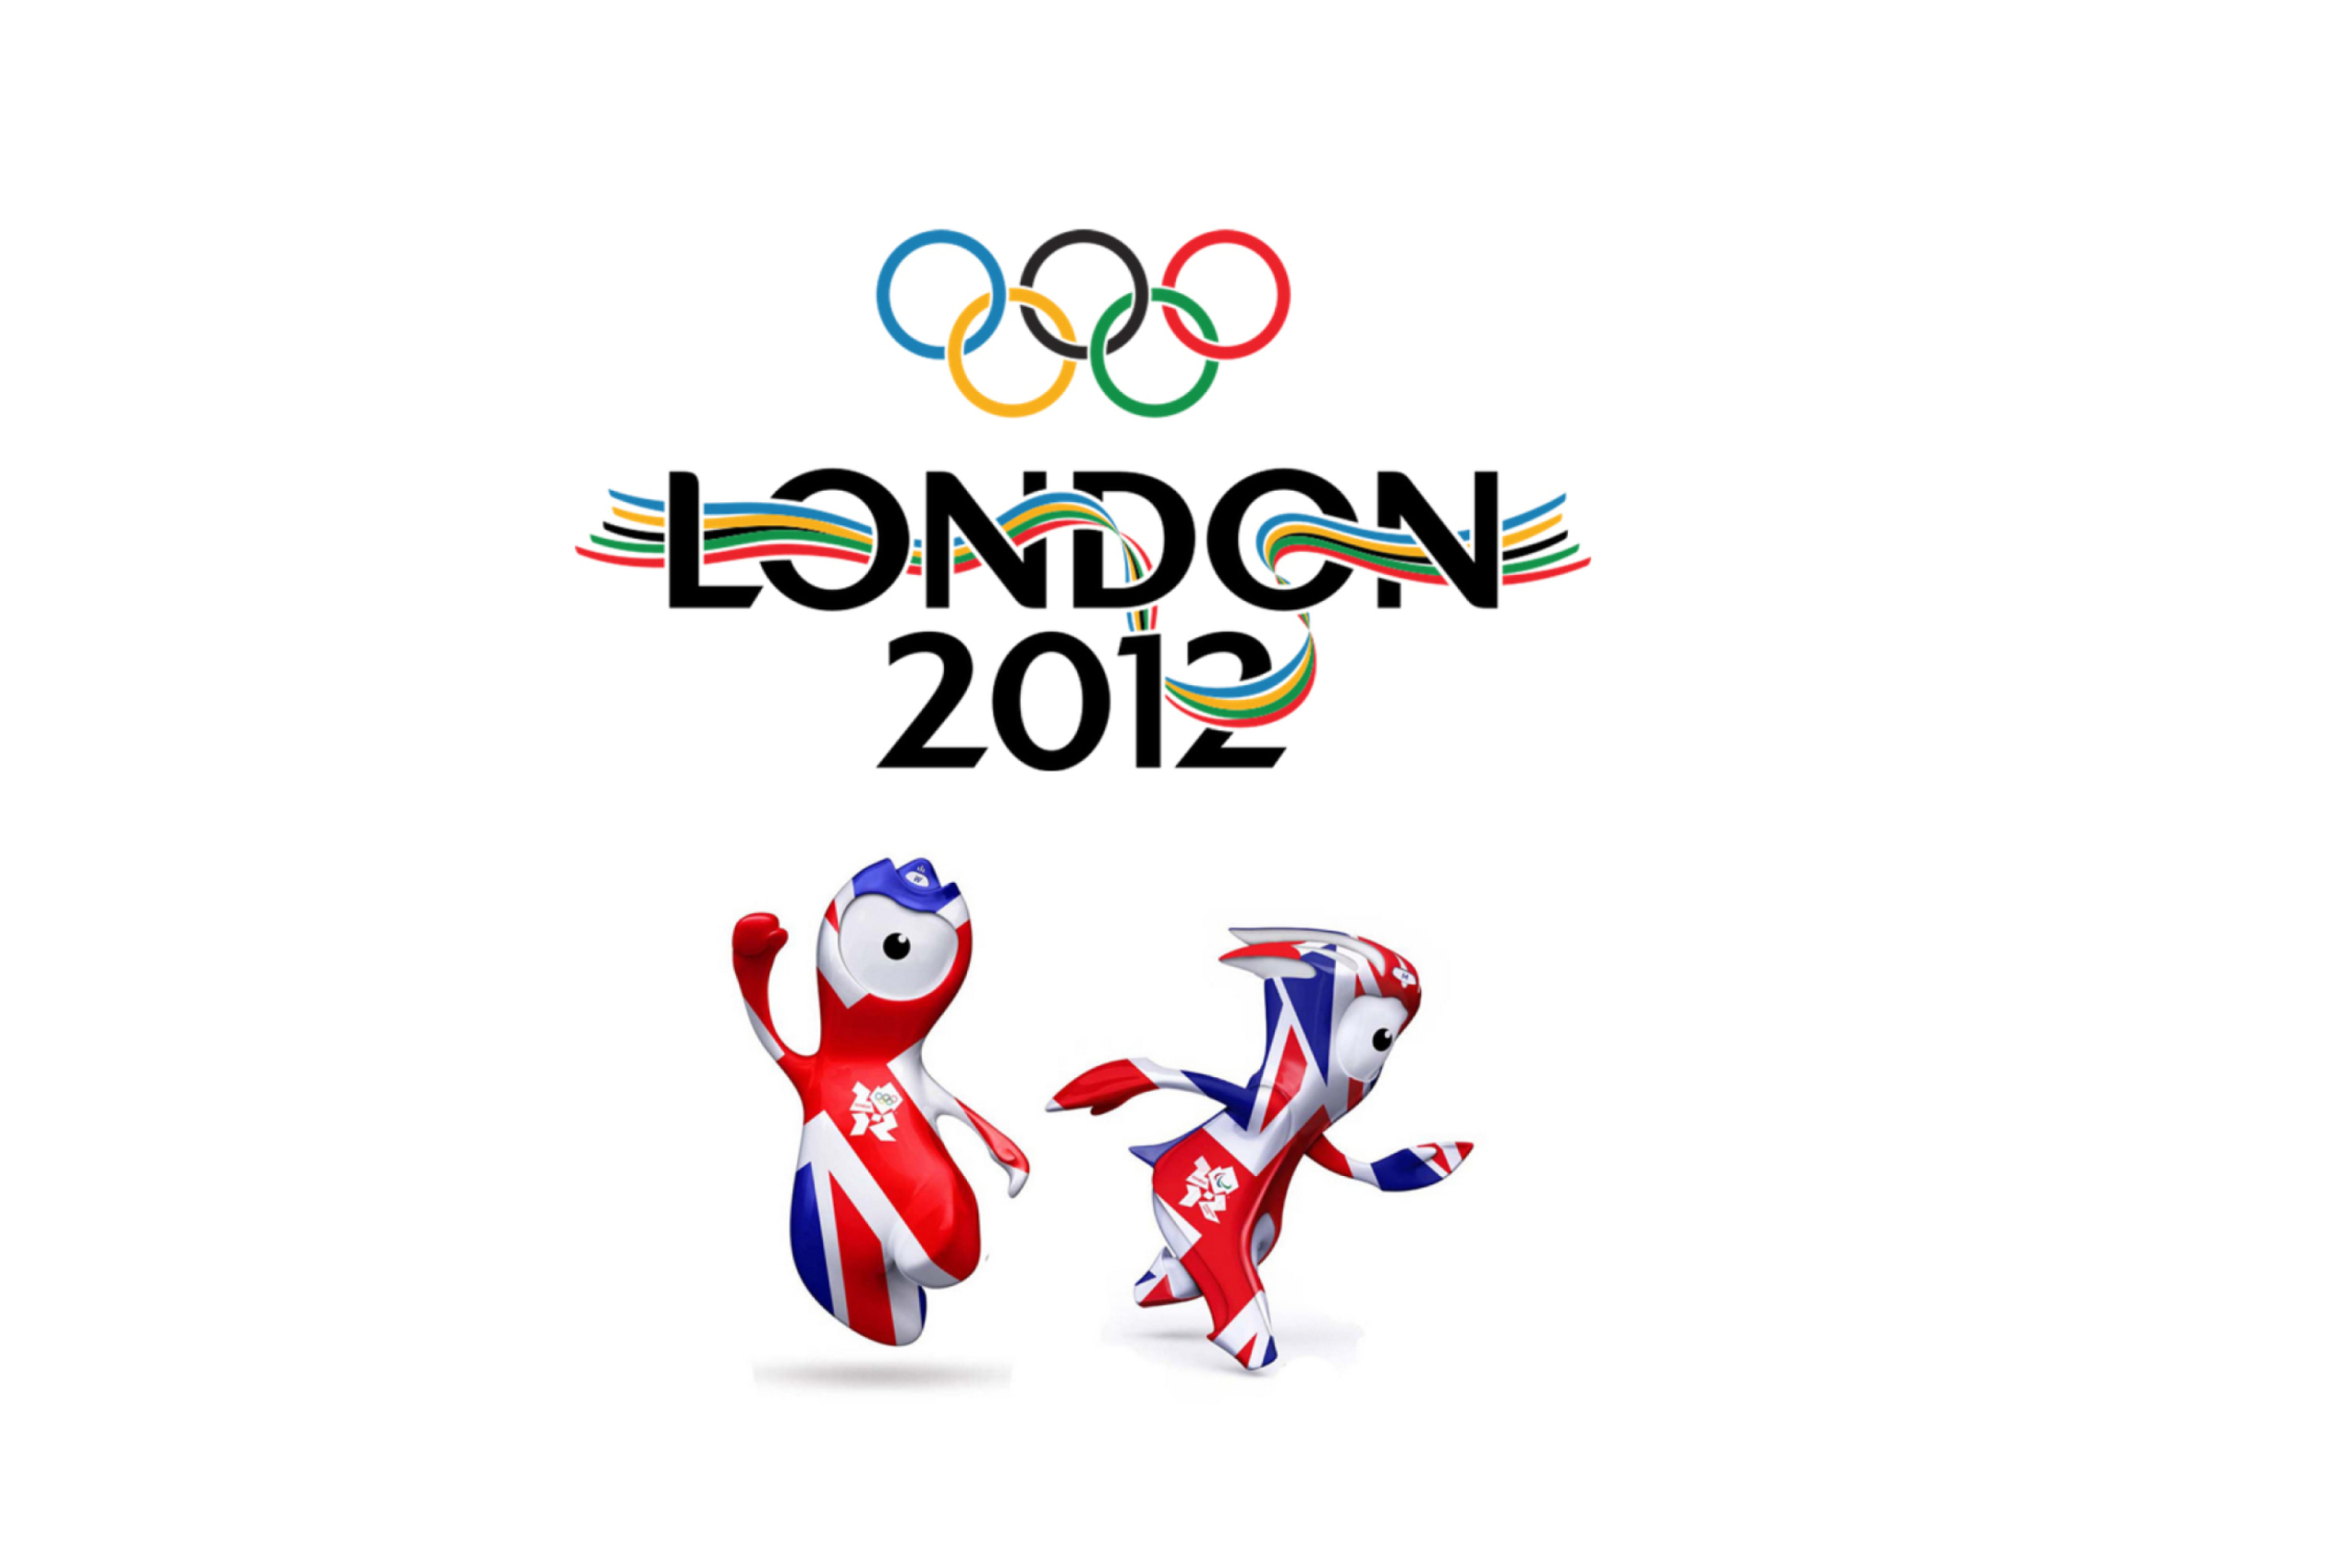 Ои 2012. Талисманы Олимпийских игр в Лондоне 2012. Олимпийские игры в Лондоне 2012. Летние Олимпийские игры 2012 года в Лондоне.